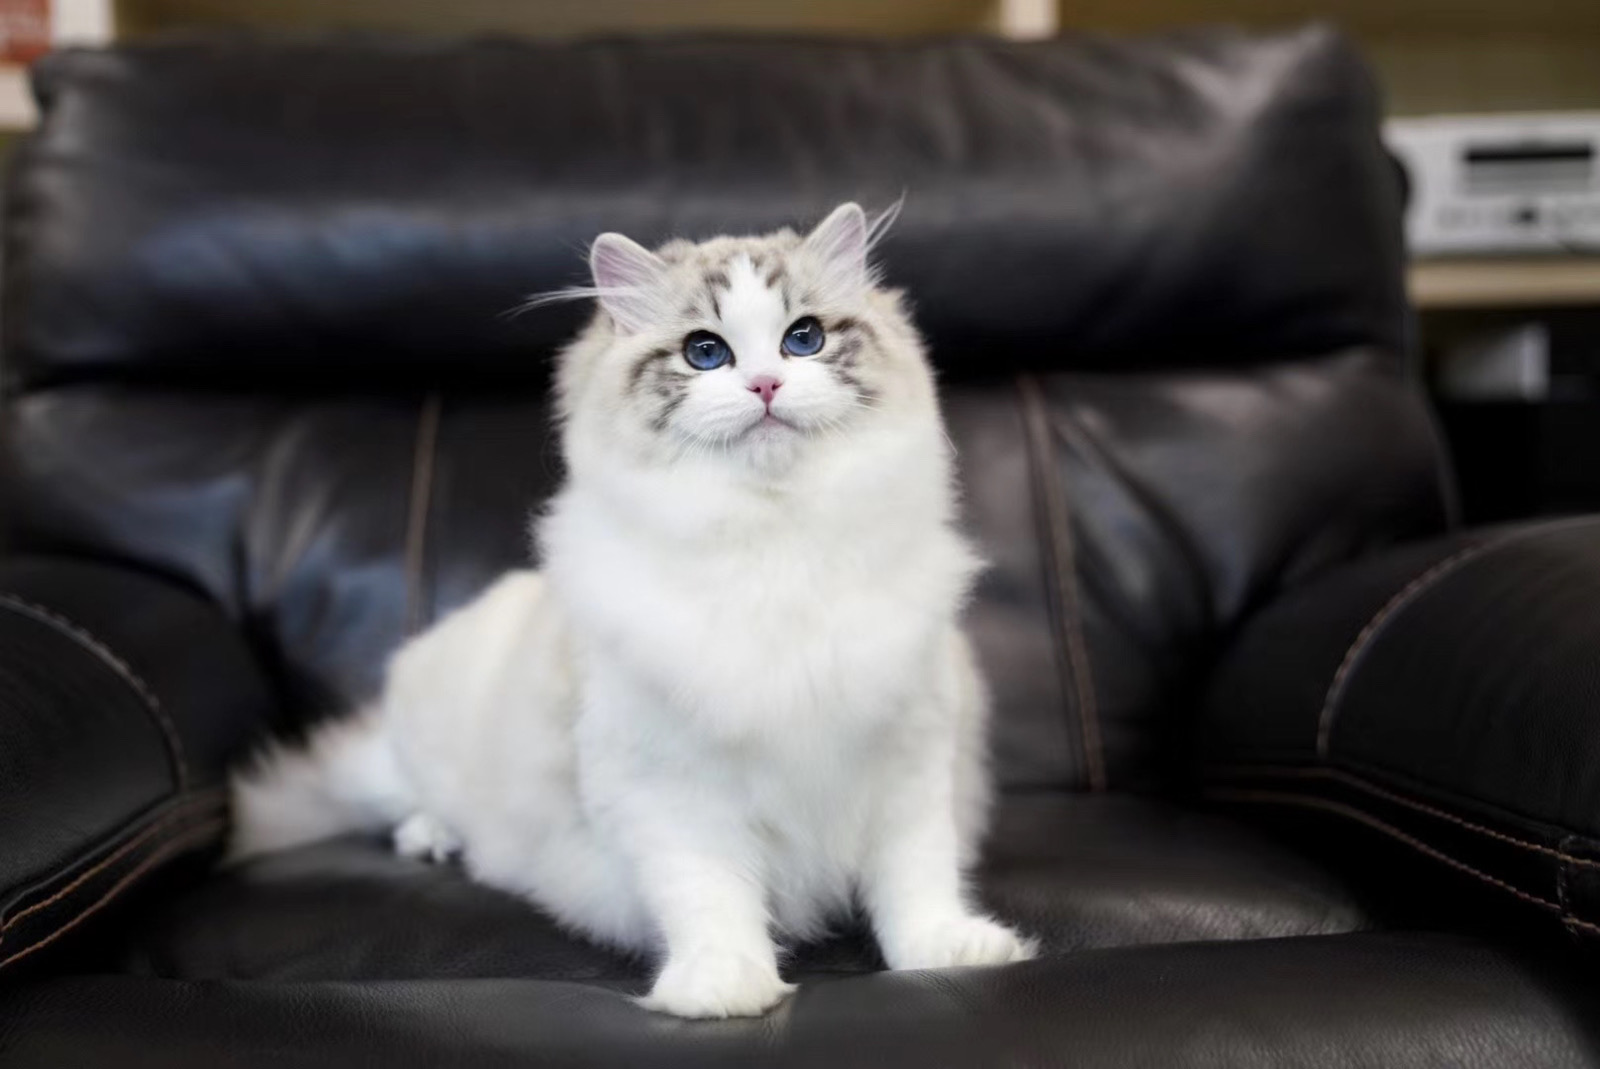 海豹山猫纹双色布偶猫,还清雅秀丽带有一丝灵气!